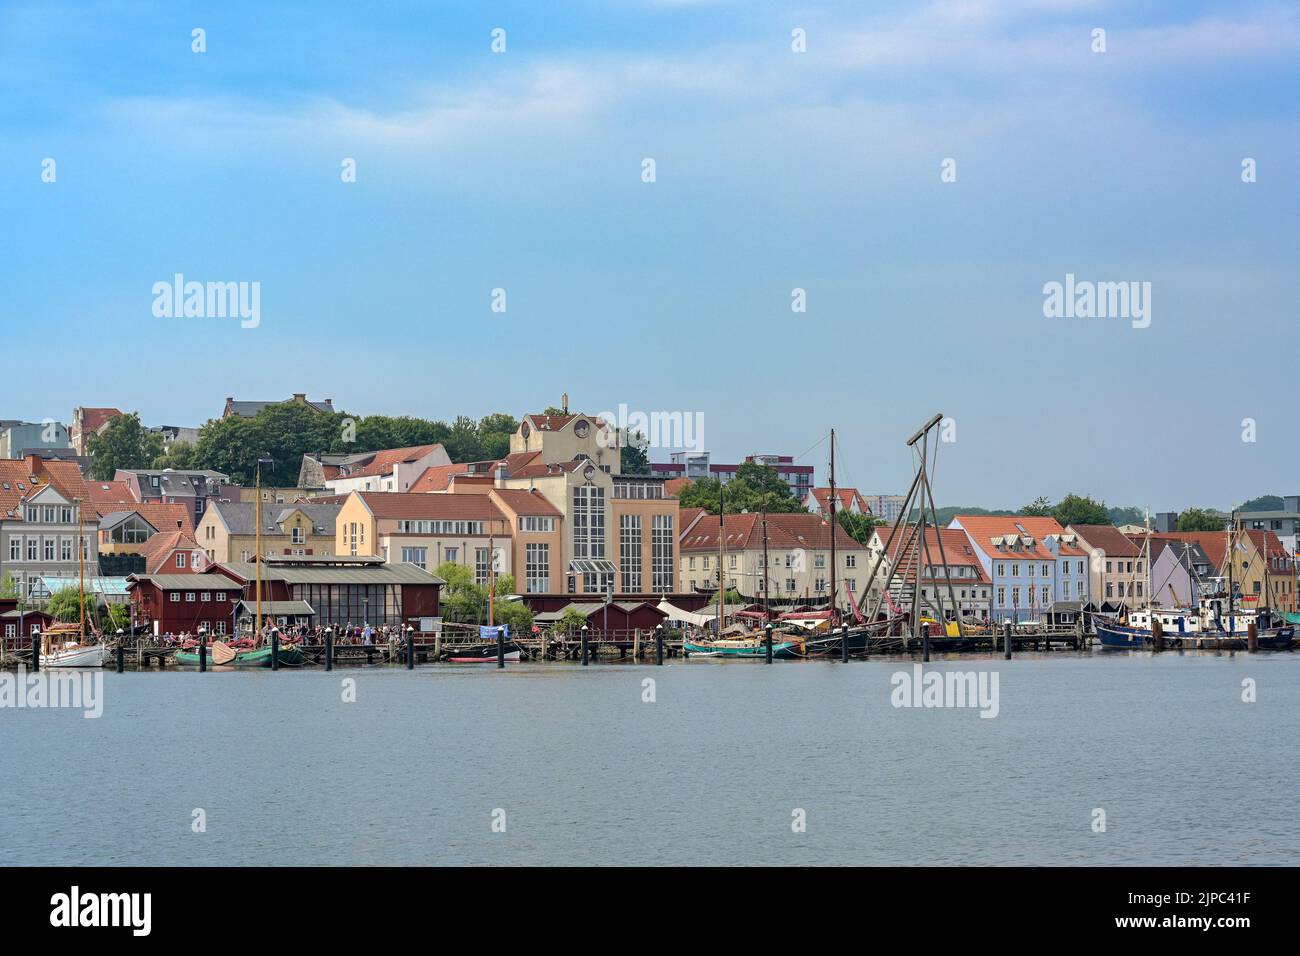 Flensburg, 25. Juli 2022: Museumshafen und alte Werft am Fjord, Stadtbild mit Stadthäusern unter einem trüben blauen Himmel, Kopierraum, se Stockfoto